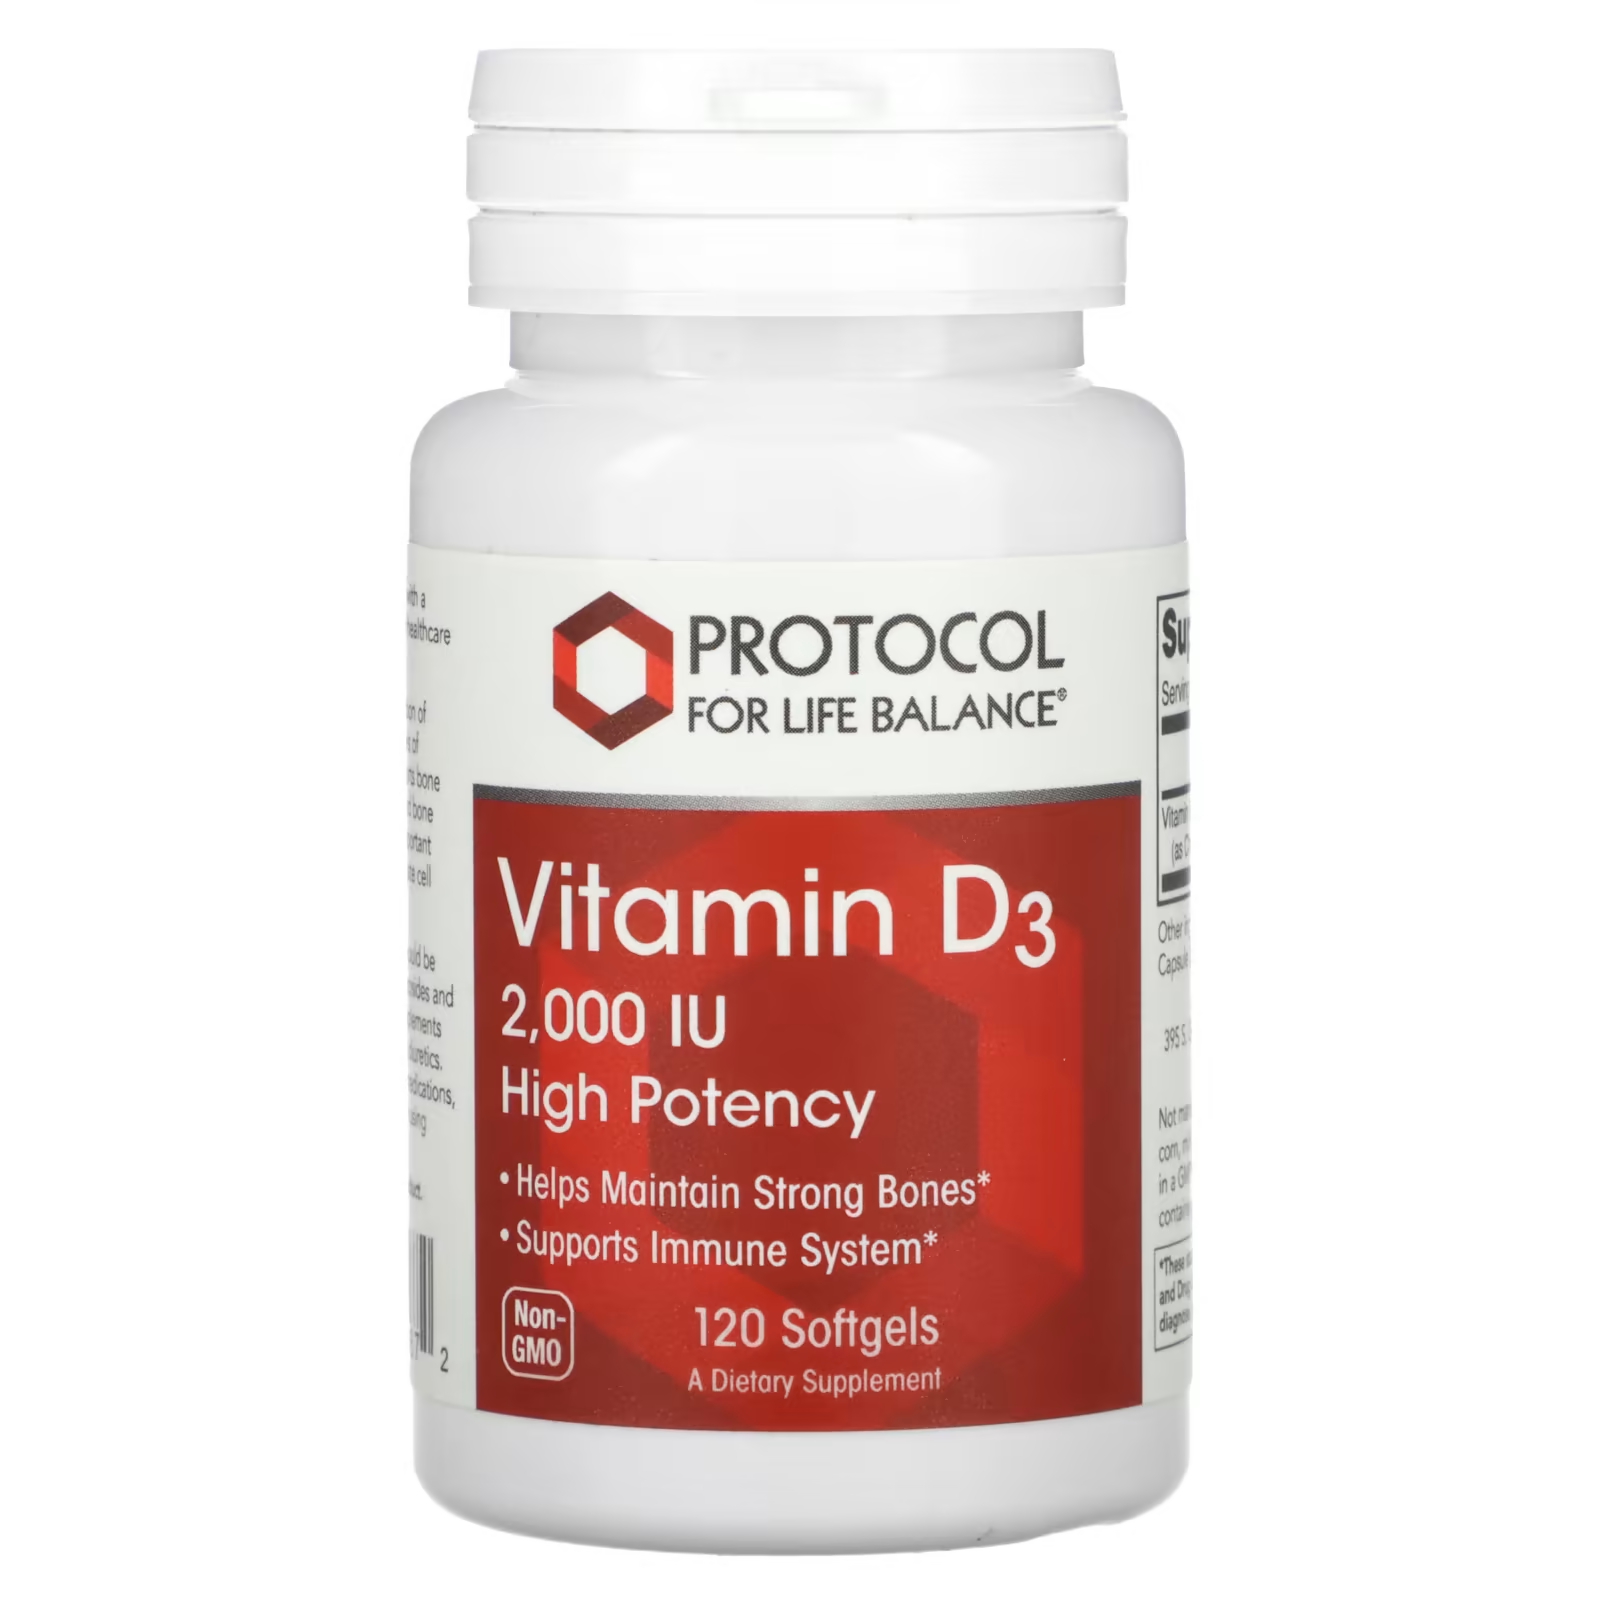 Витамин D3 Protocol for Life Balance высокая эффективность 2000 МЕ, 120 мягких таблеток витамин d3 protocol for life balance высокая эффективность 2000 ме 120 мягких таблеток